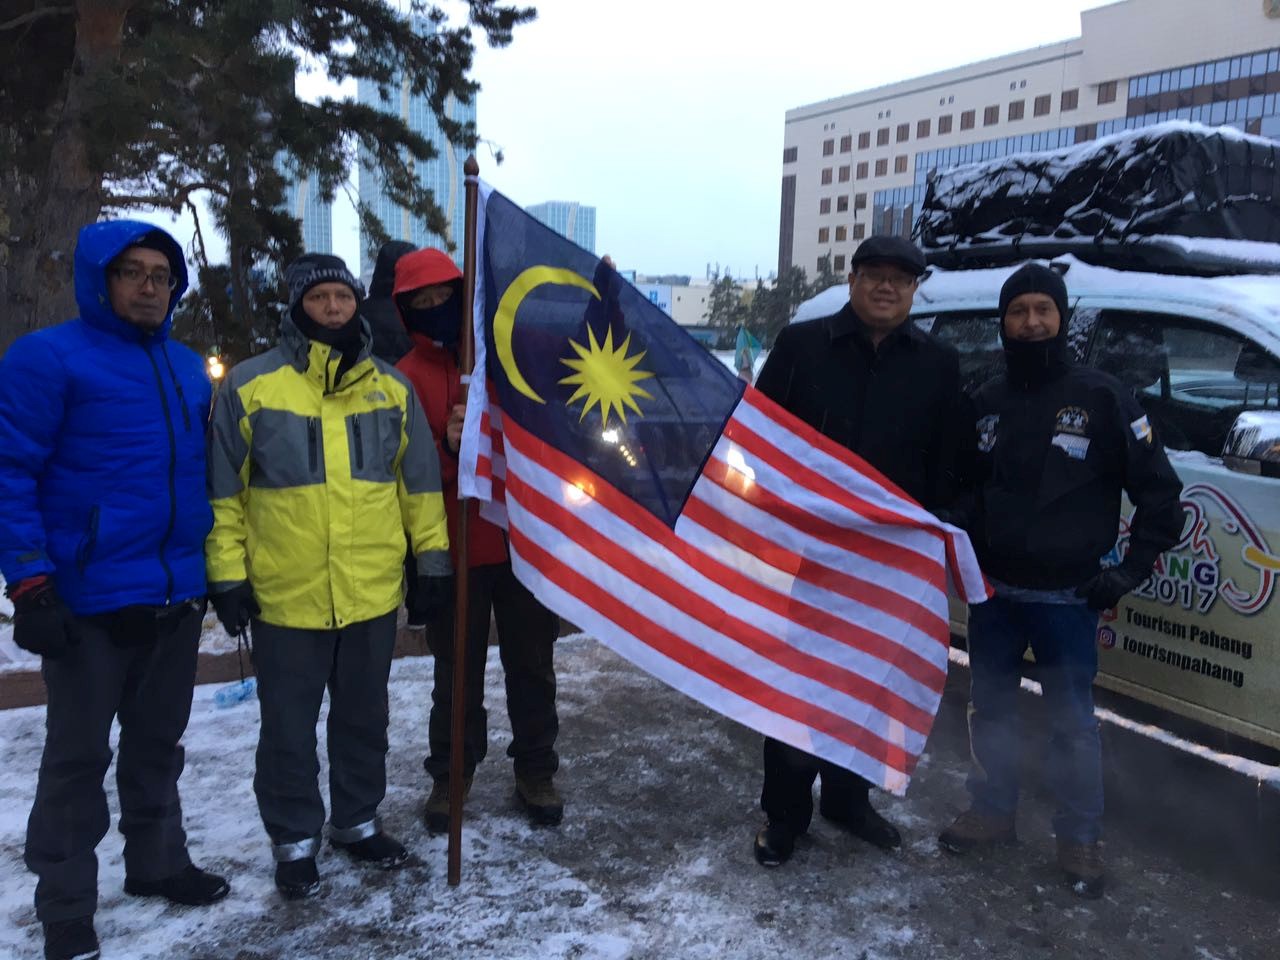 Malaysian Expedition Promotes Pahang As Tourist Destination During Astana Visit